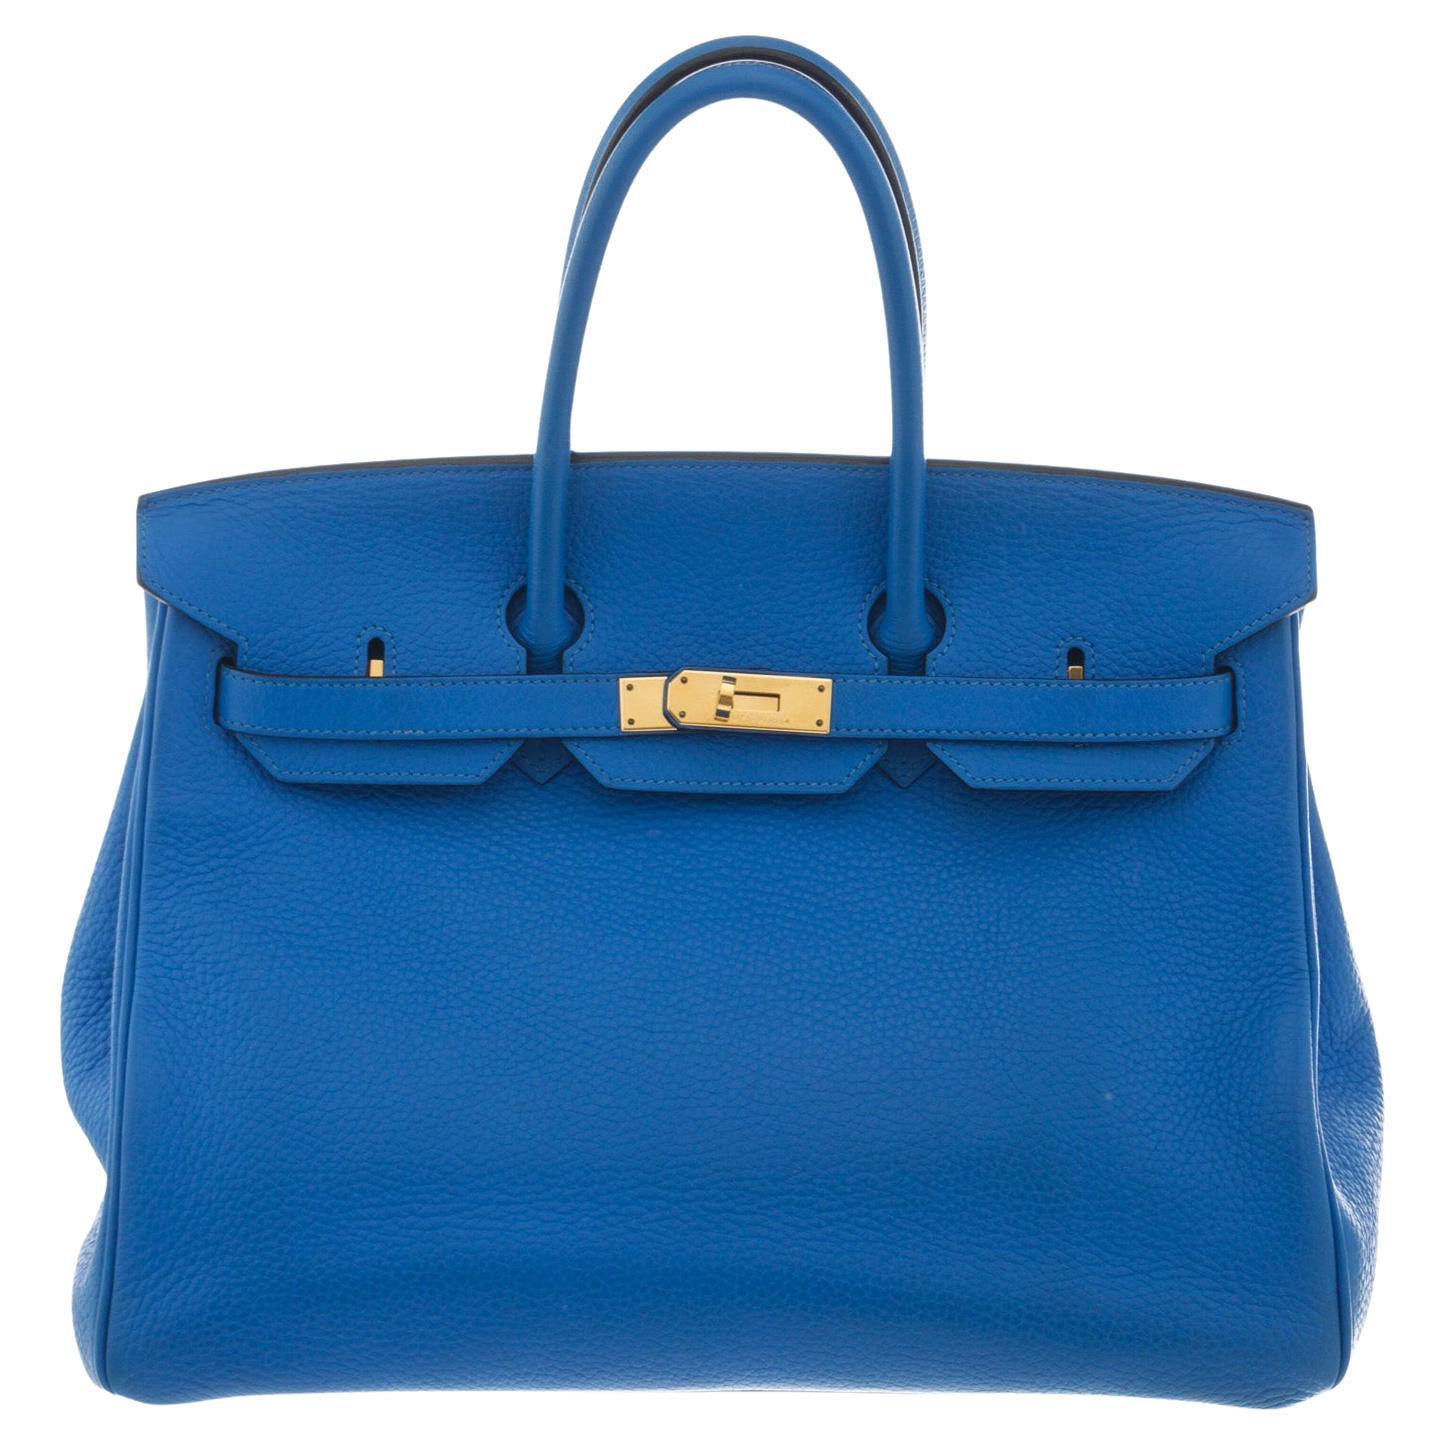 Hermes Blue Toge Leather Birkin 35cm Shoulder Bag